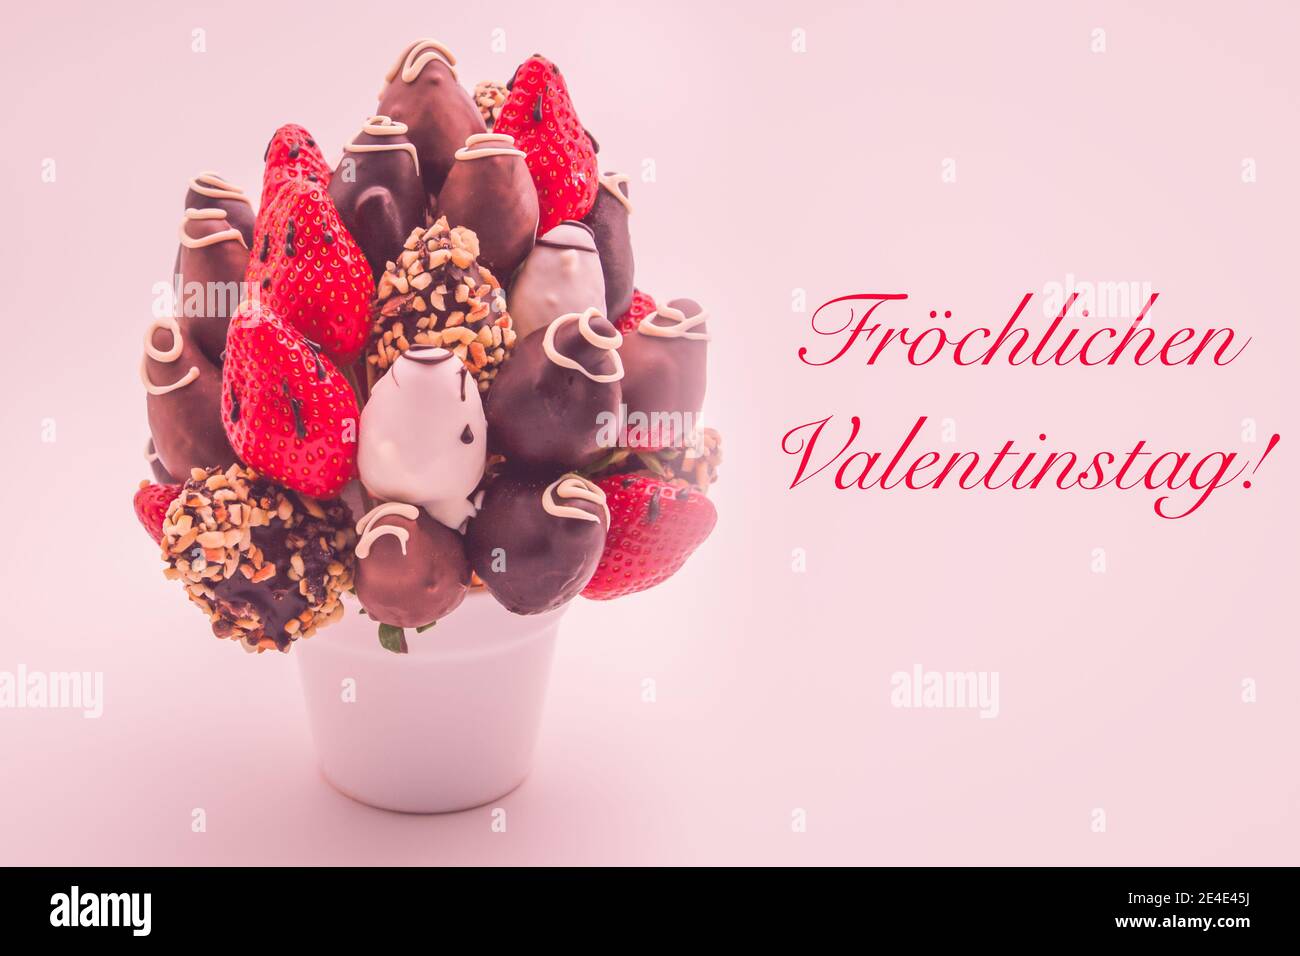 Feliz día de San Valentín tarjeta de felicitación en alemán con letras rojas que dice Fröchlichen Valentinstag; ramo de flores comestibles, arreglo de chocolate Foto de stock